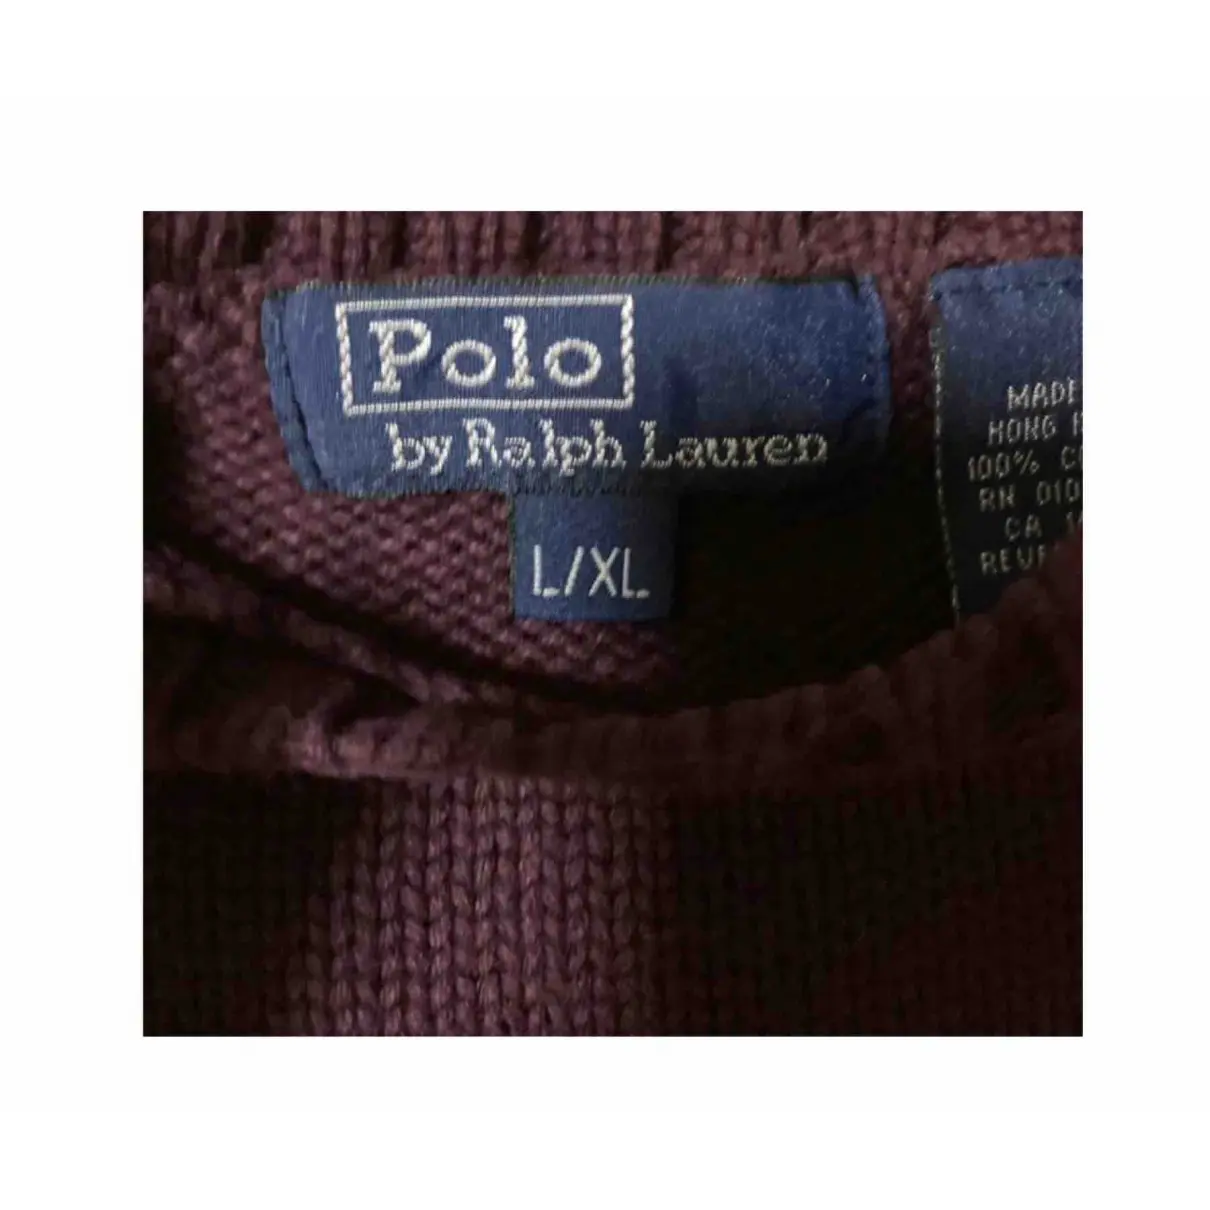 Luxury Polo Ralph Lauren Knitwear Kids